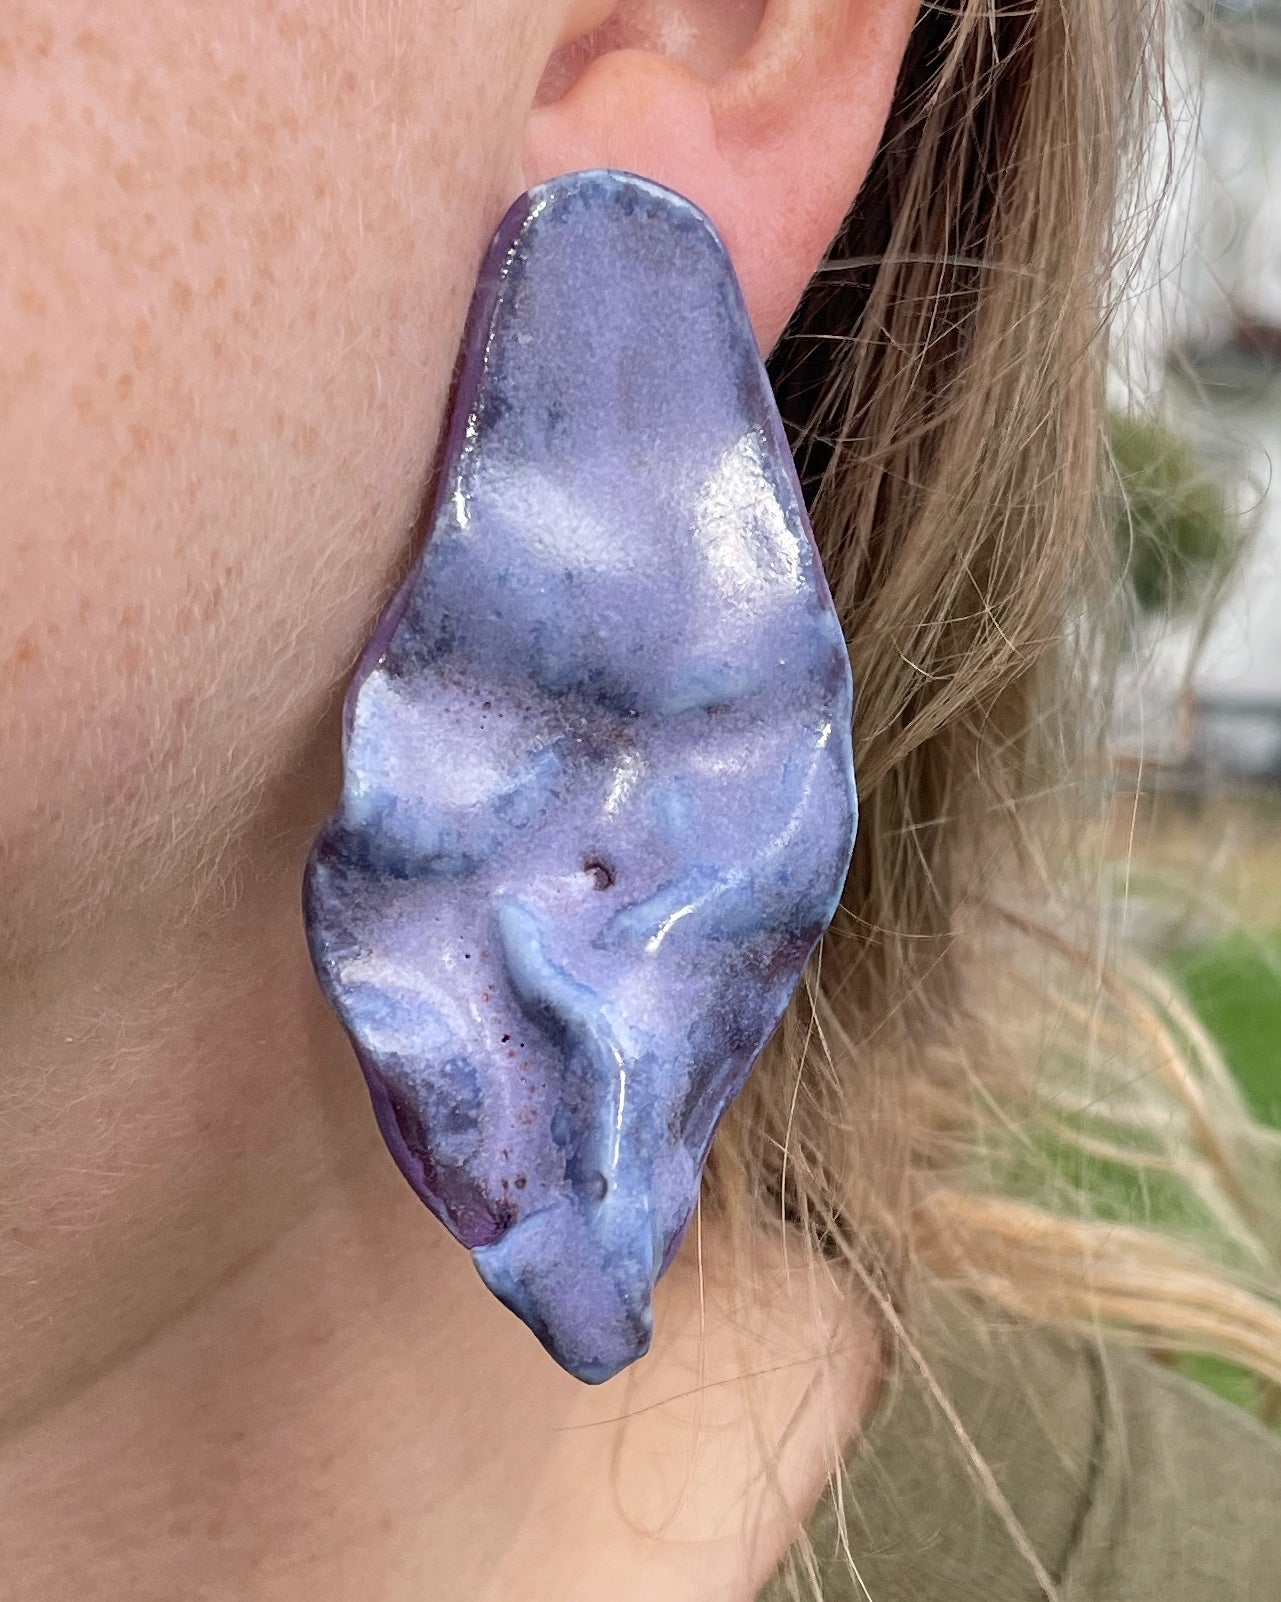 Pleated purple earrings